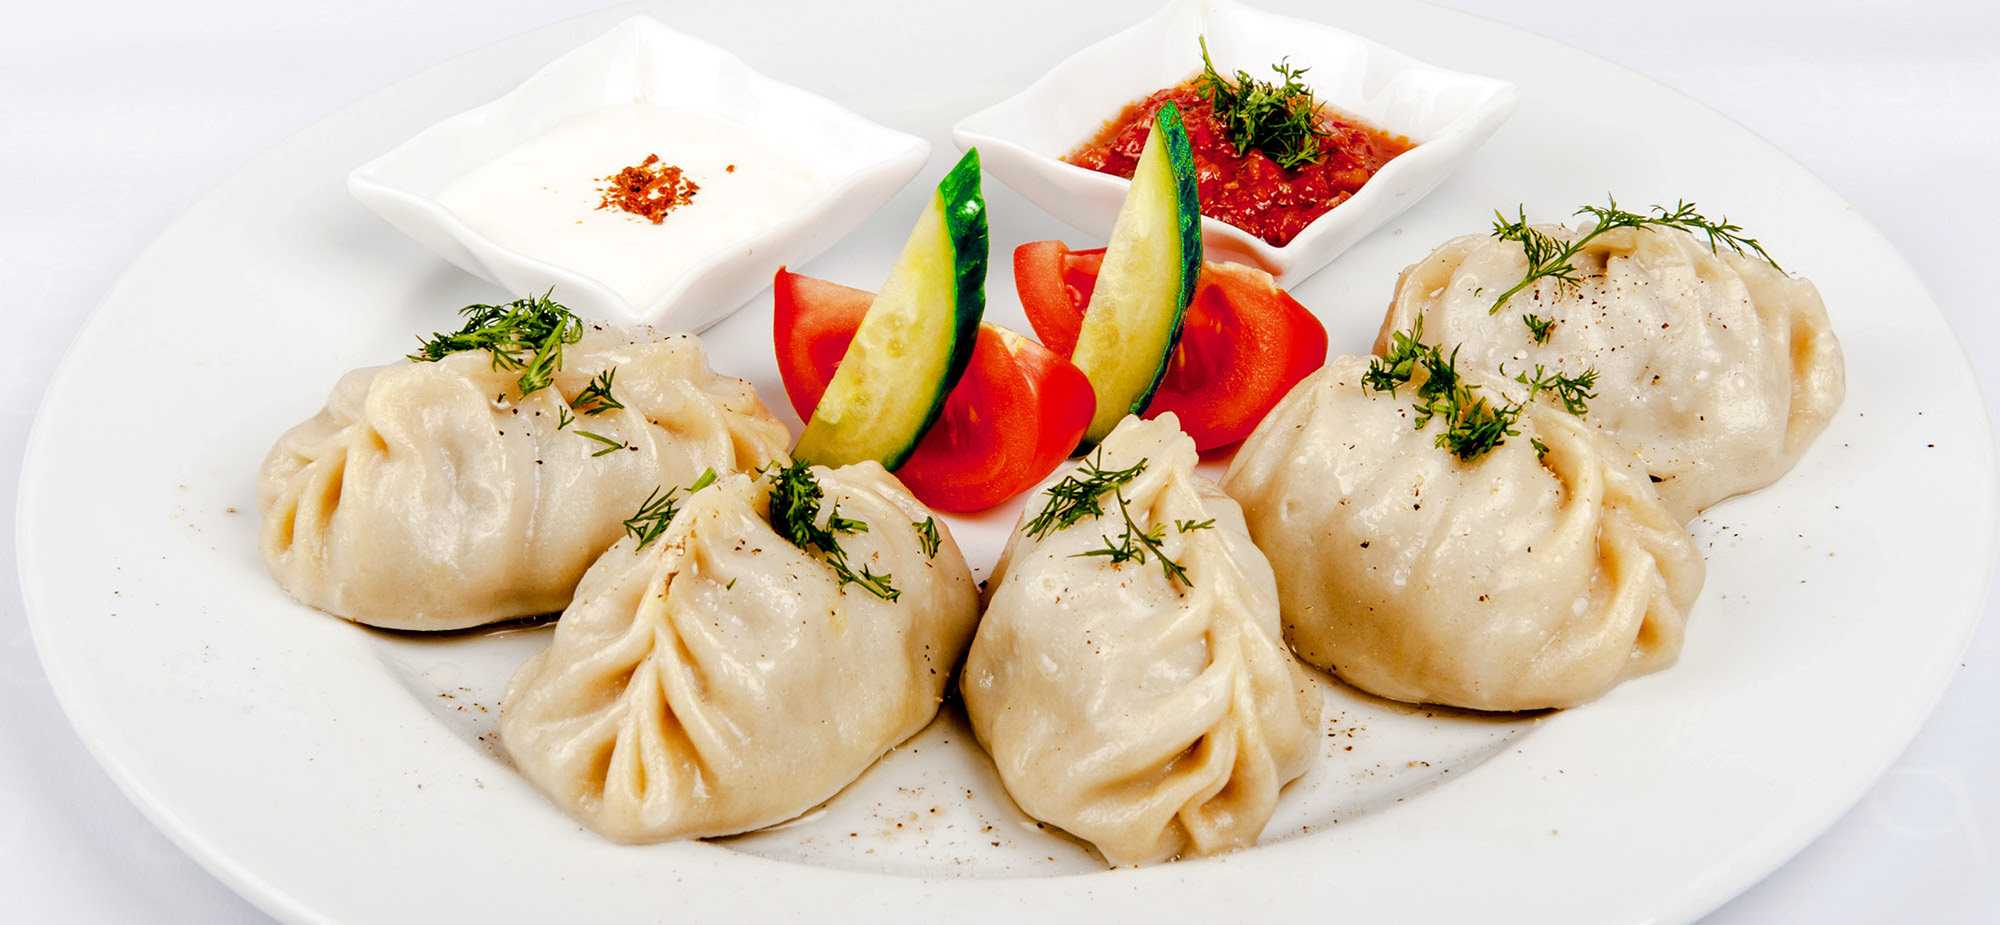 Как приготовить вкусные и сочные манты: самые лучшие рецепты настоящих узбекских мантов, мантов с мясом и тыквой по-азиатски, с рыбой и других вариантов приготовления мантов | qulady